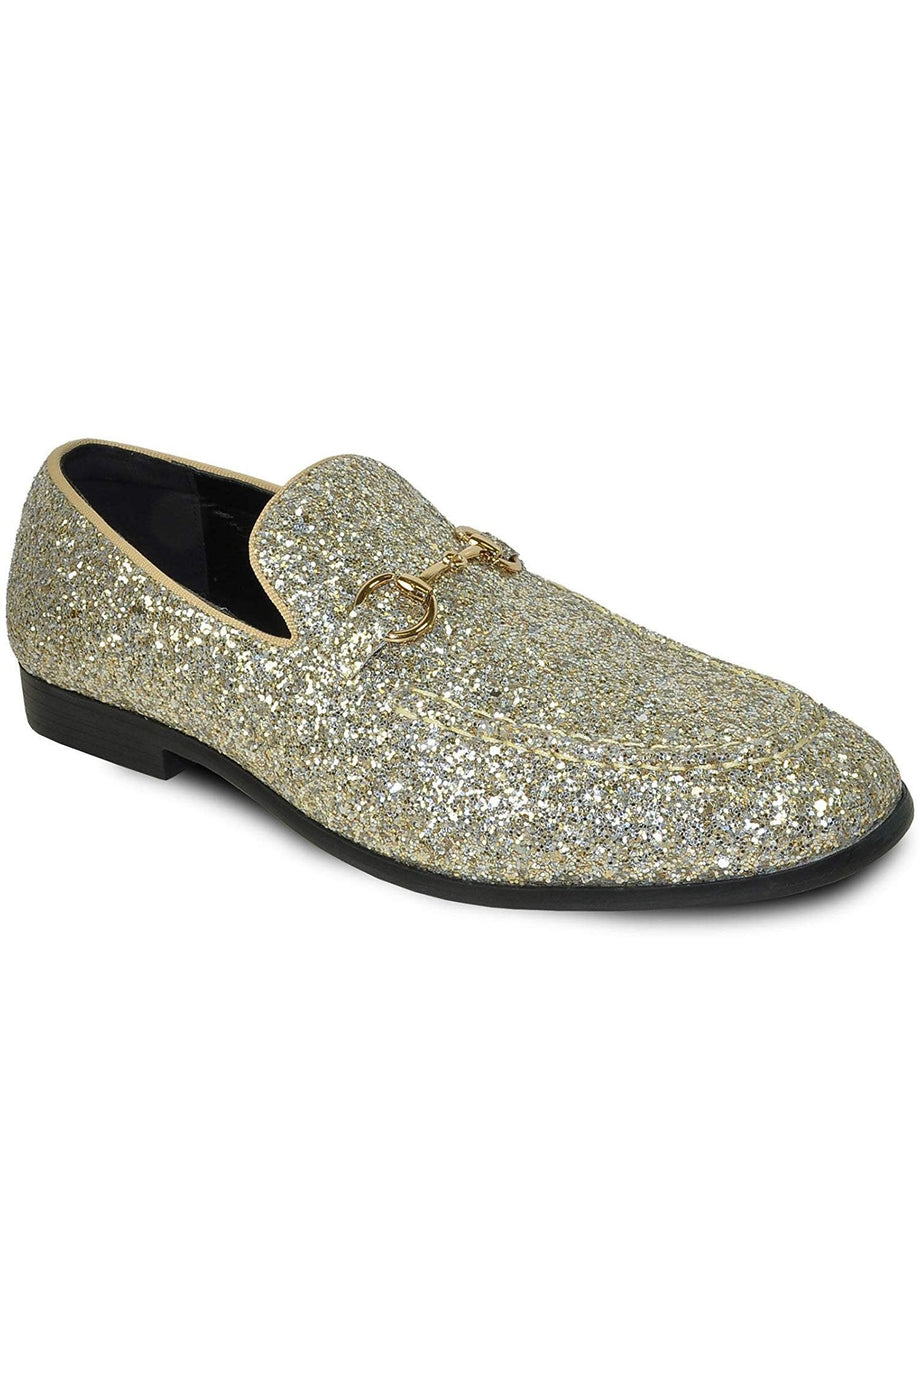 Bravo "Glitter" Gold Shoes